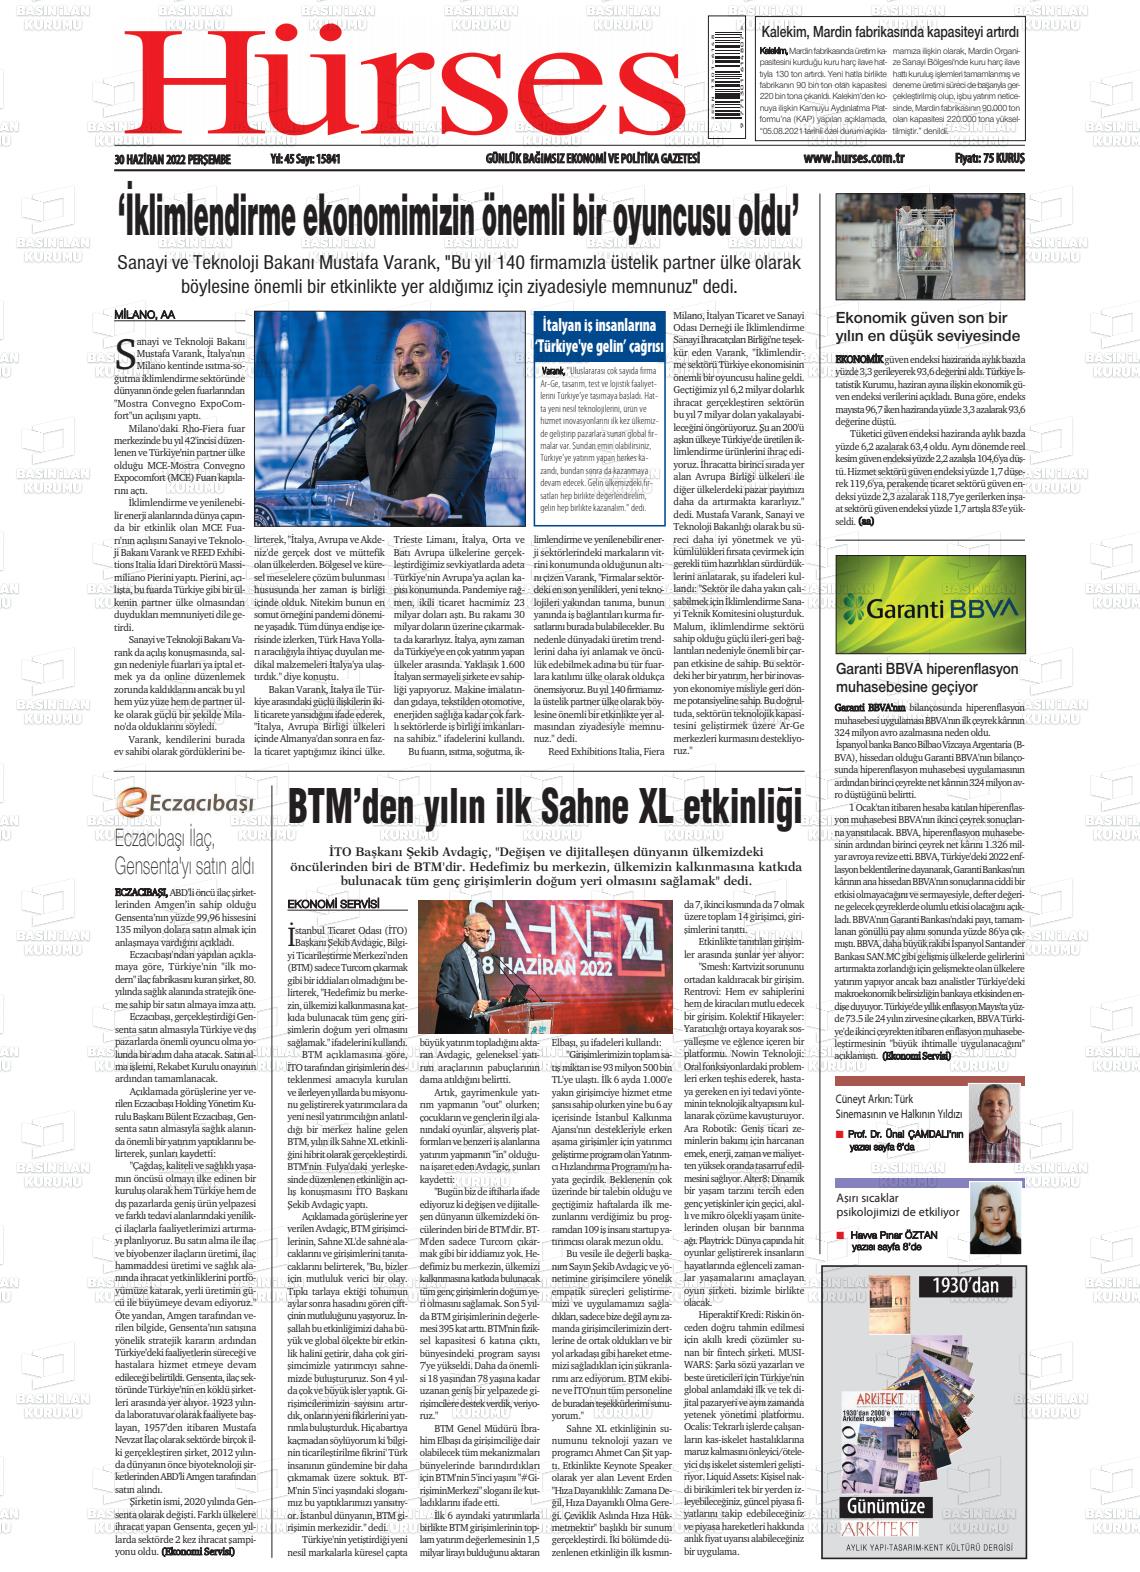 02 Temmuz 2022 İstanbul Hürses gazetesi Gazete Manşeti